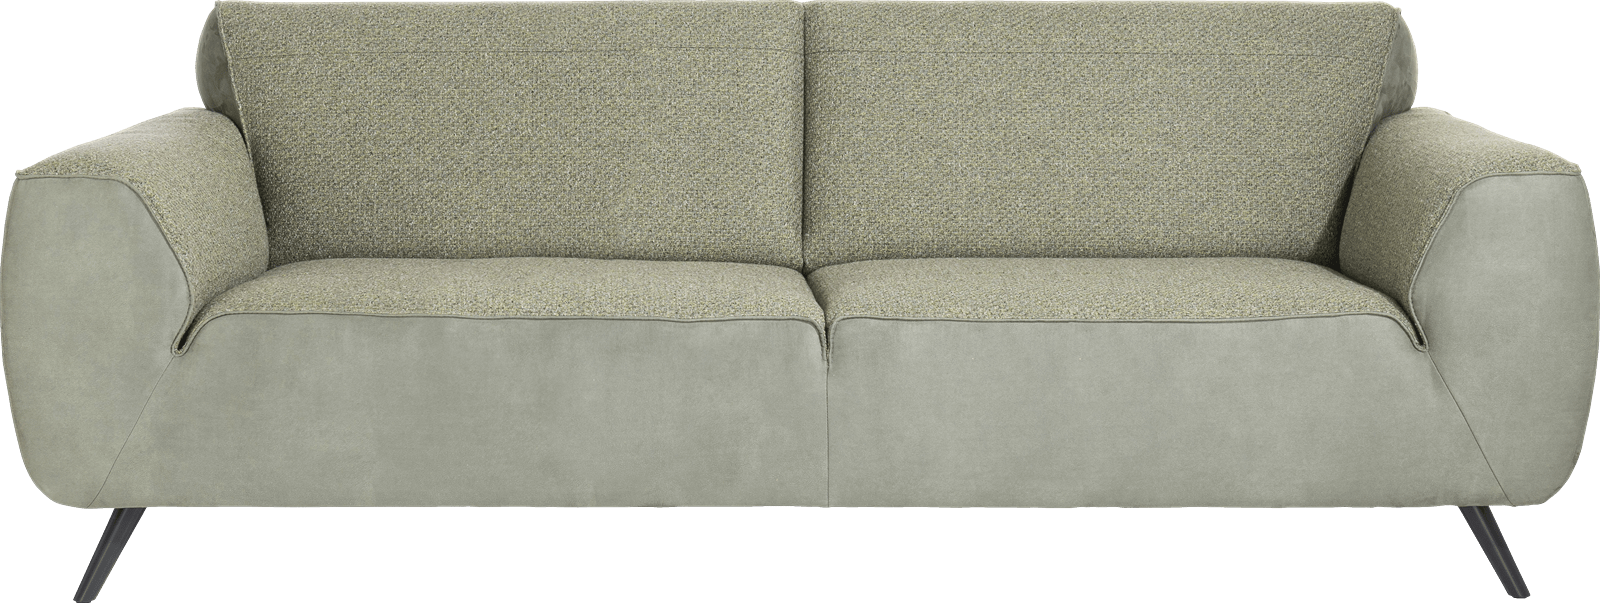 XOOON - Lima - Minimalistisches Design - Sofas - 3-Sitzer